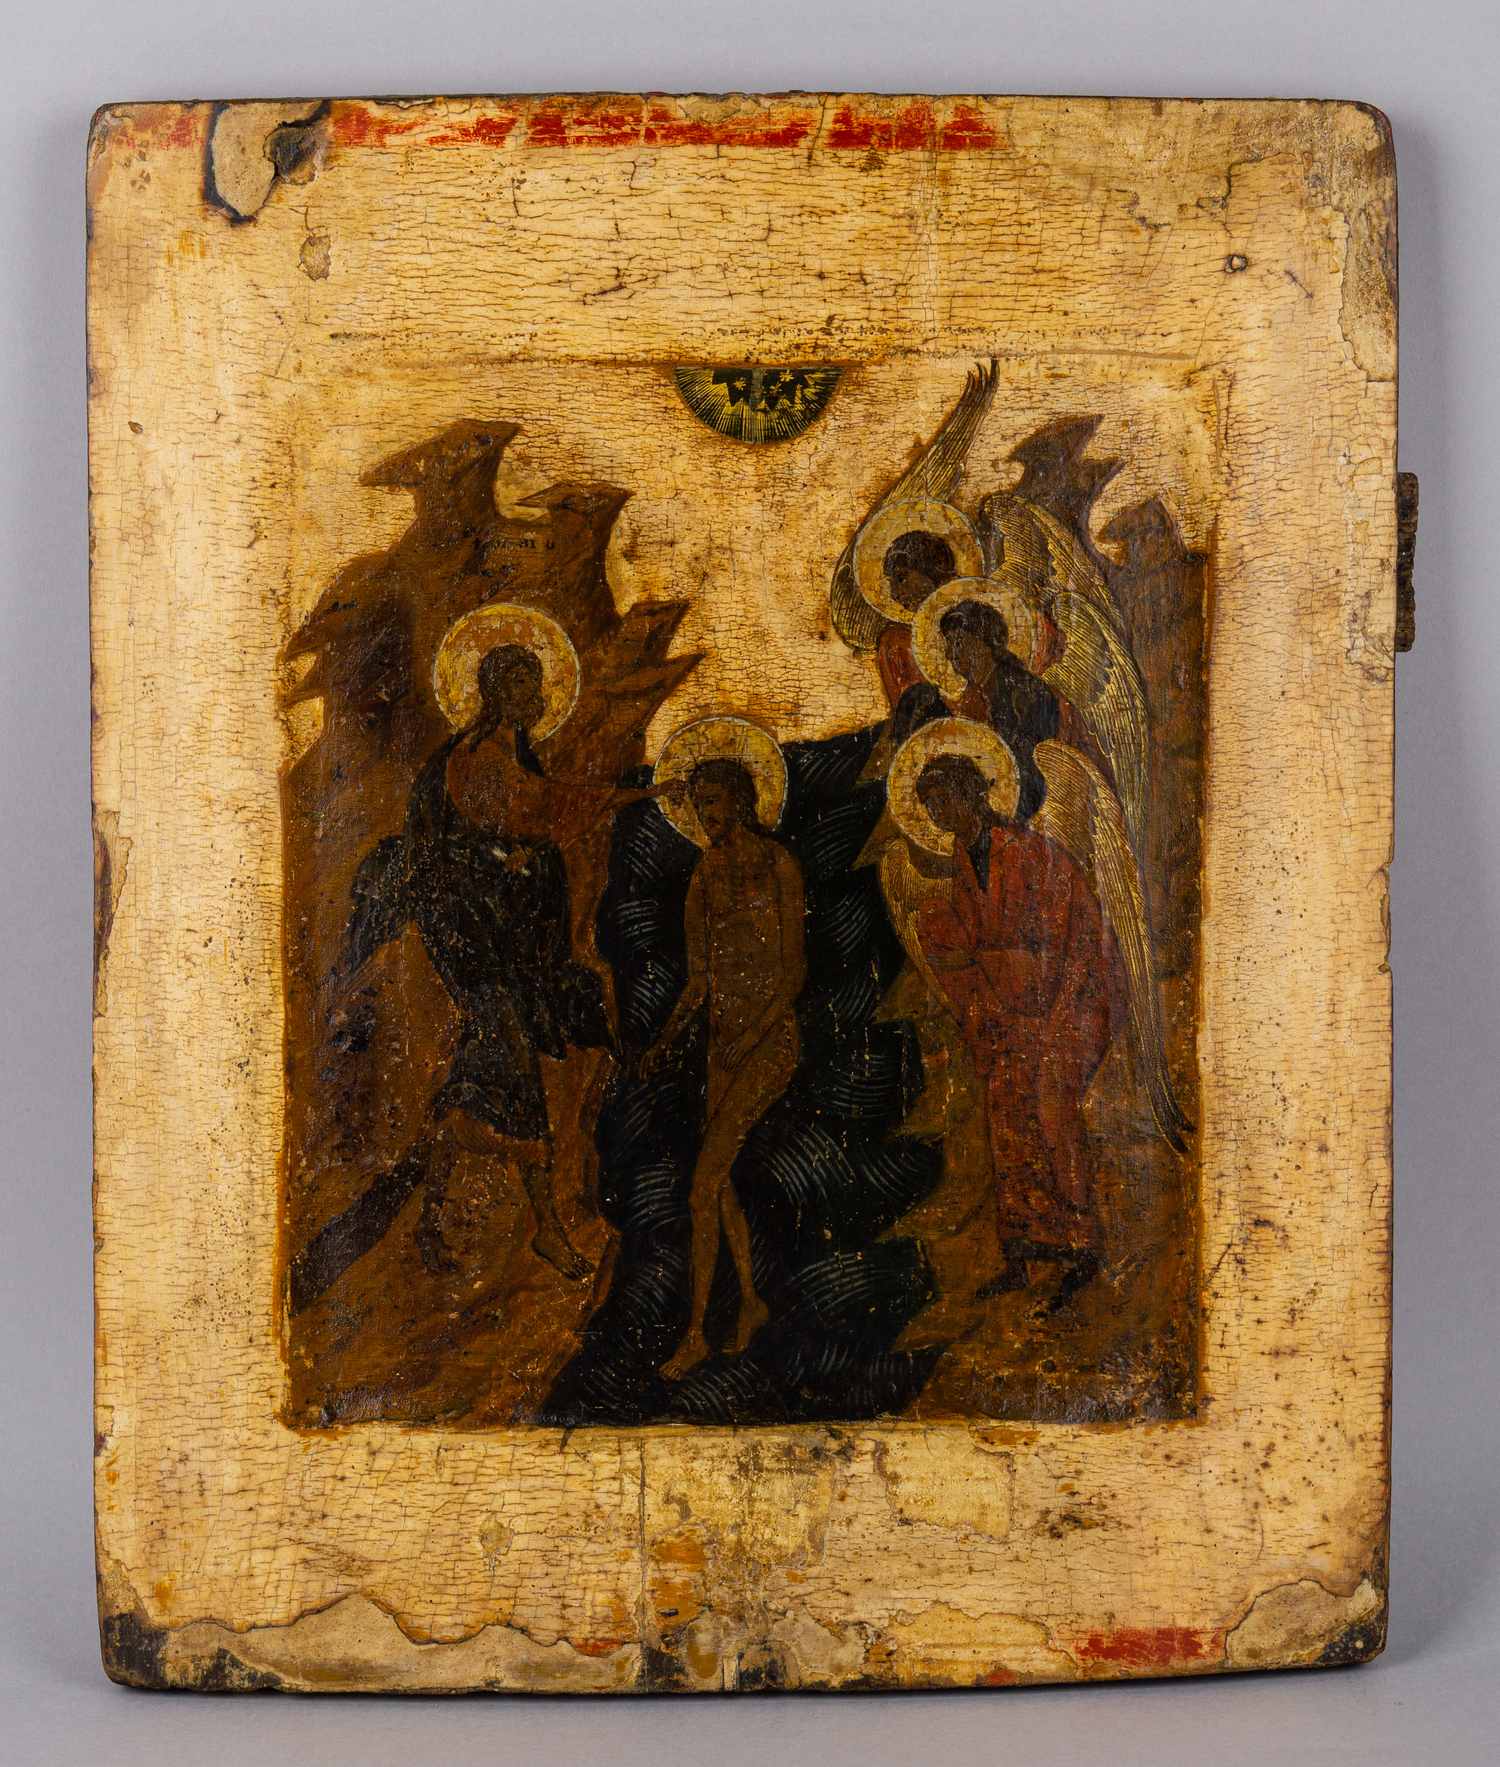 Икона «Богоявление» (Крещение).<br>Россия, XVI век.